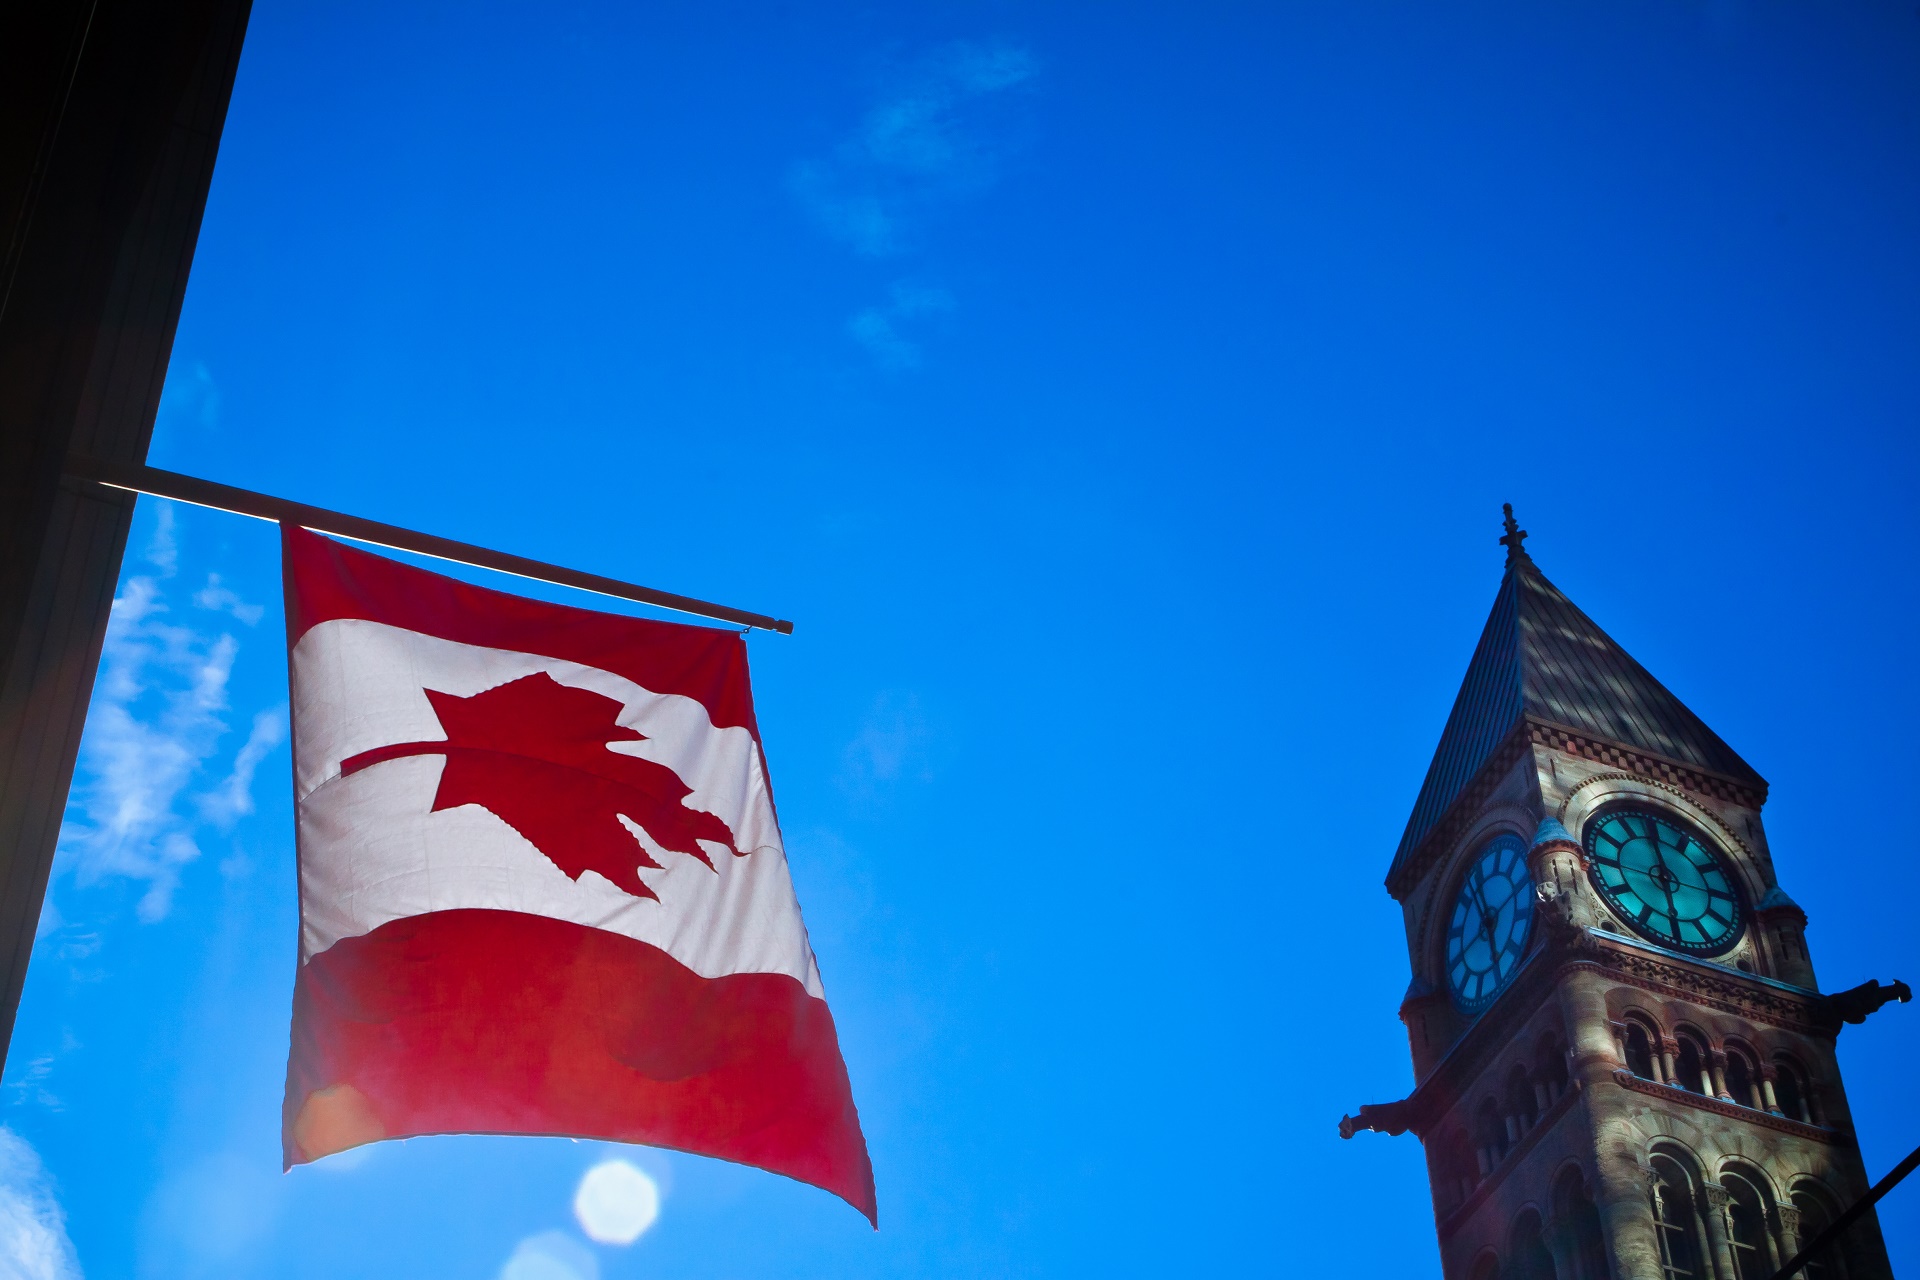 Скачать обои Канадский Флаг на телефон бесплатно